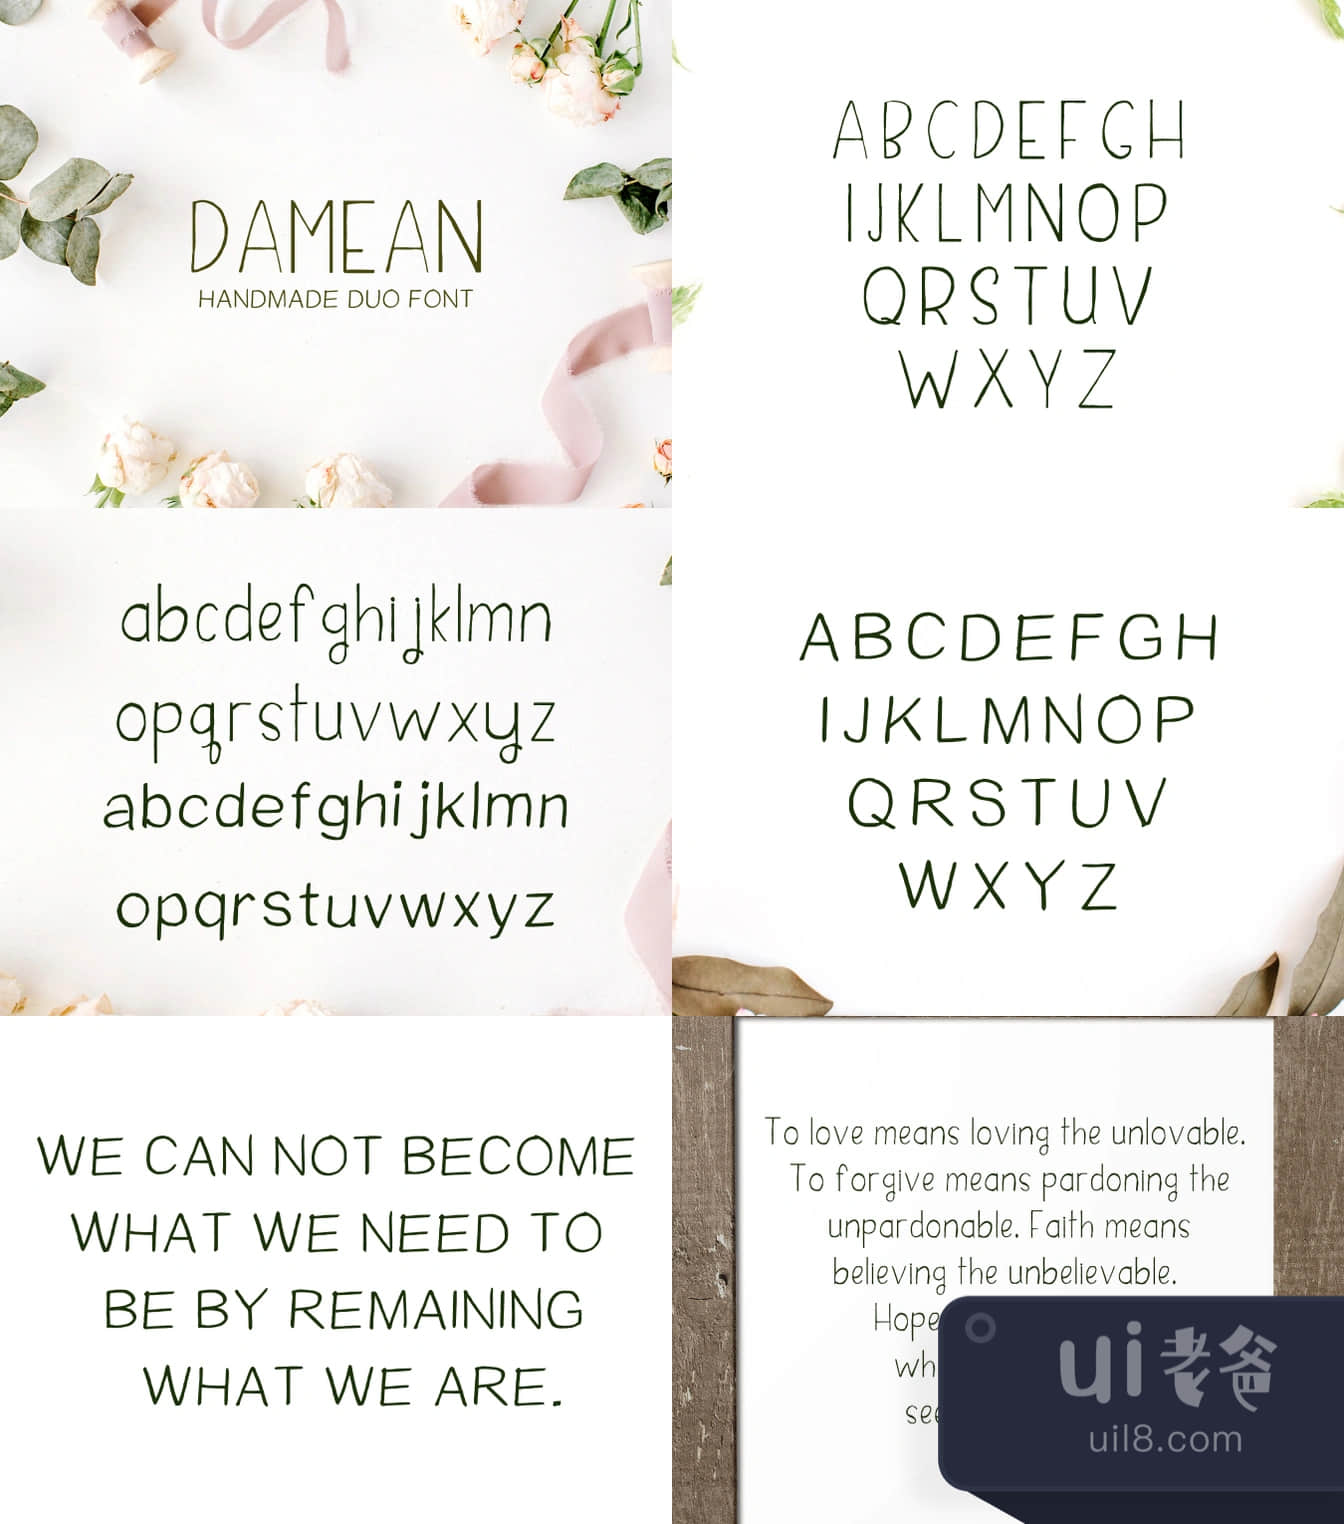 大明双拼字体 (Damean Duo Font)插图1